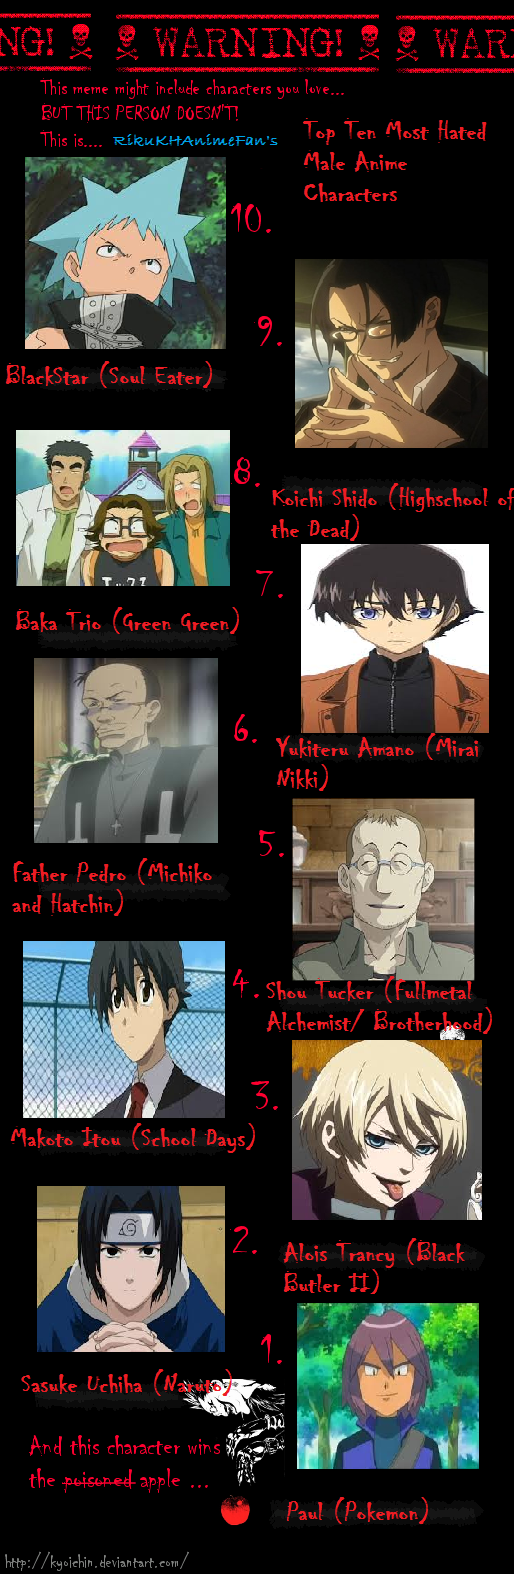 Top Ten Most Hated Male Anime Characters by RikuKHAnimeFan on DeviantArt